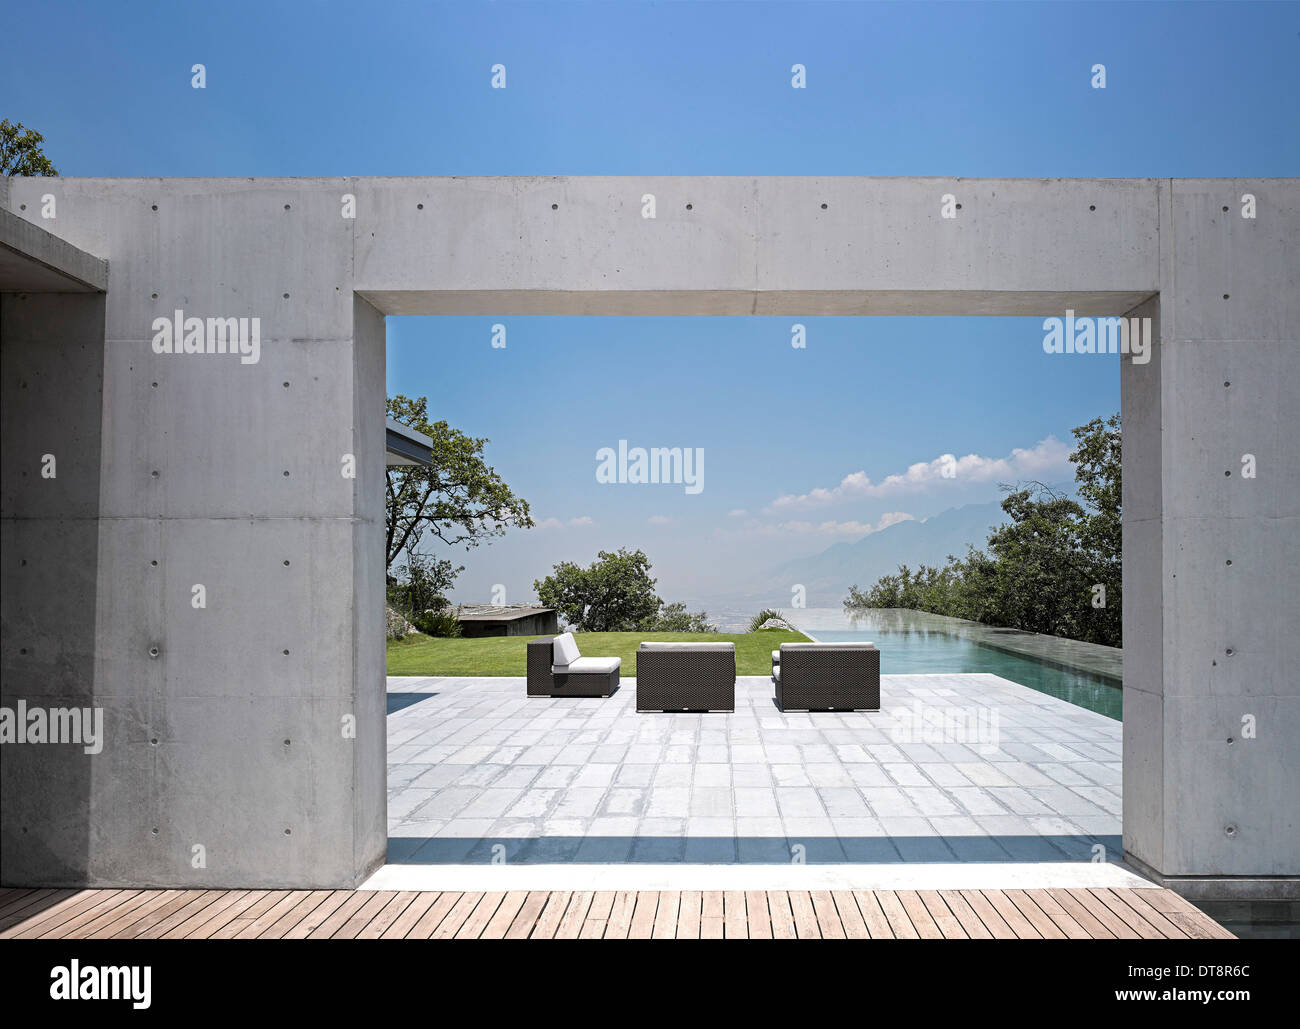 Casa Monterrey, Monterrey, Mexiko. Architekt: Tadao Ando, 2013. Zeigen Sie rund um Pool mit Liegestühlen an. Stockfoto